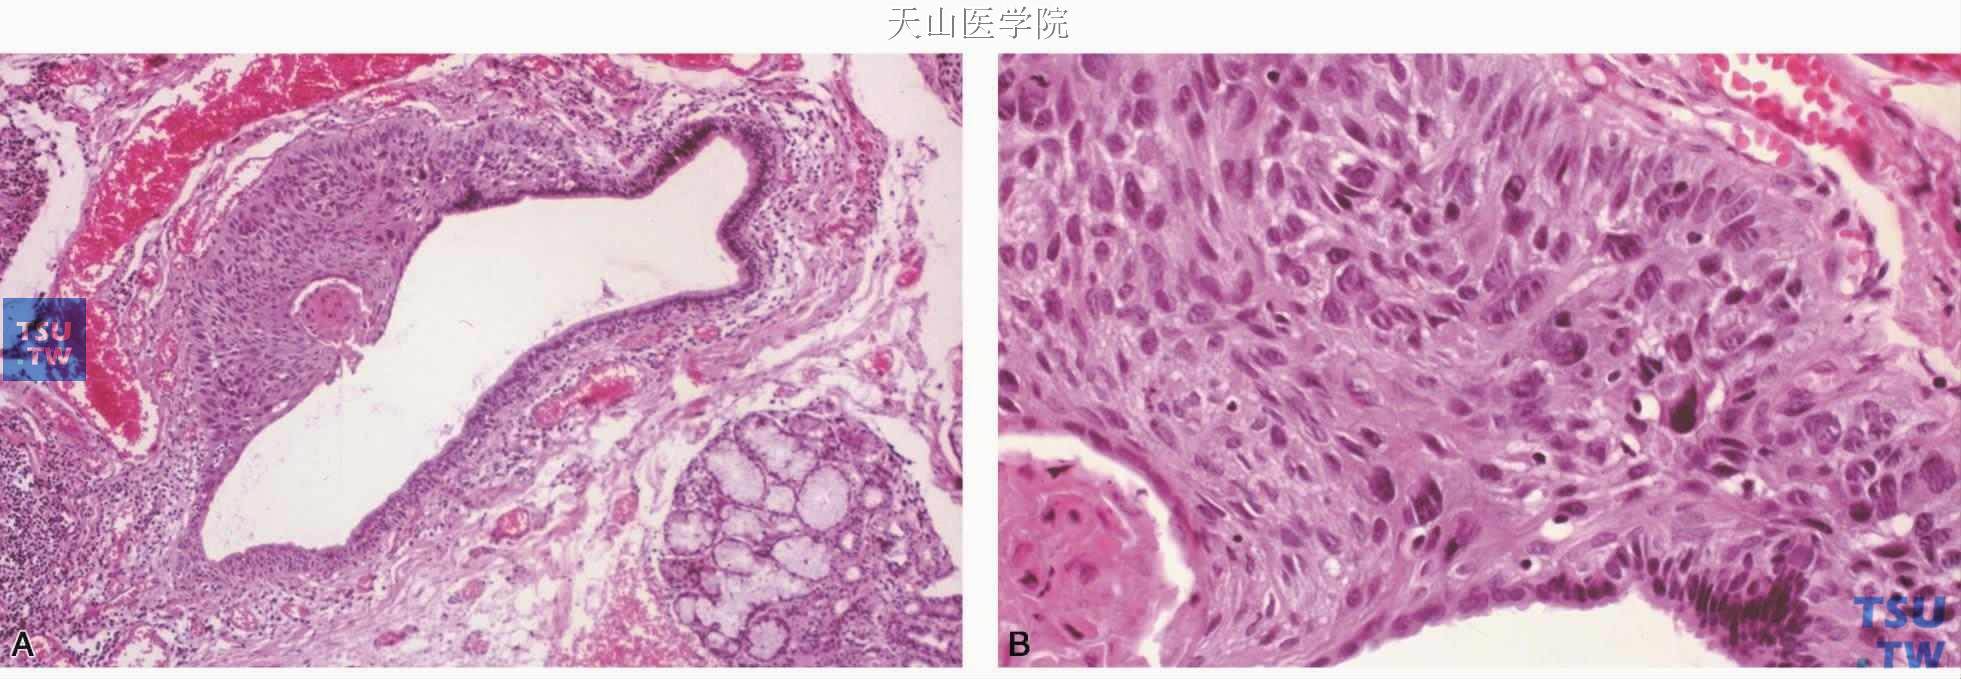 鳞状细胞癌 A.唾液腺导管内衬上皮增生，呈原位癌表现；B.高倍镜下见肿瘤的异型性和角化珠